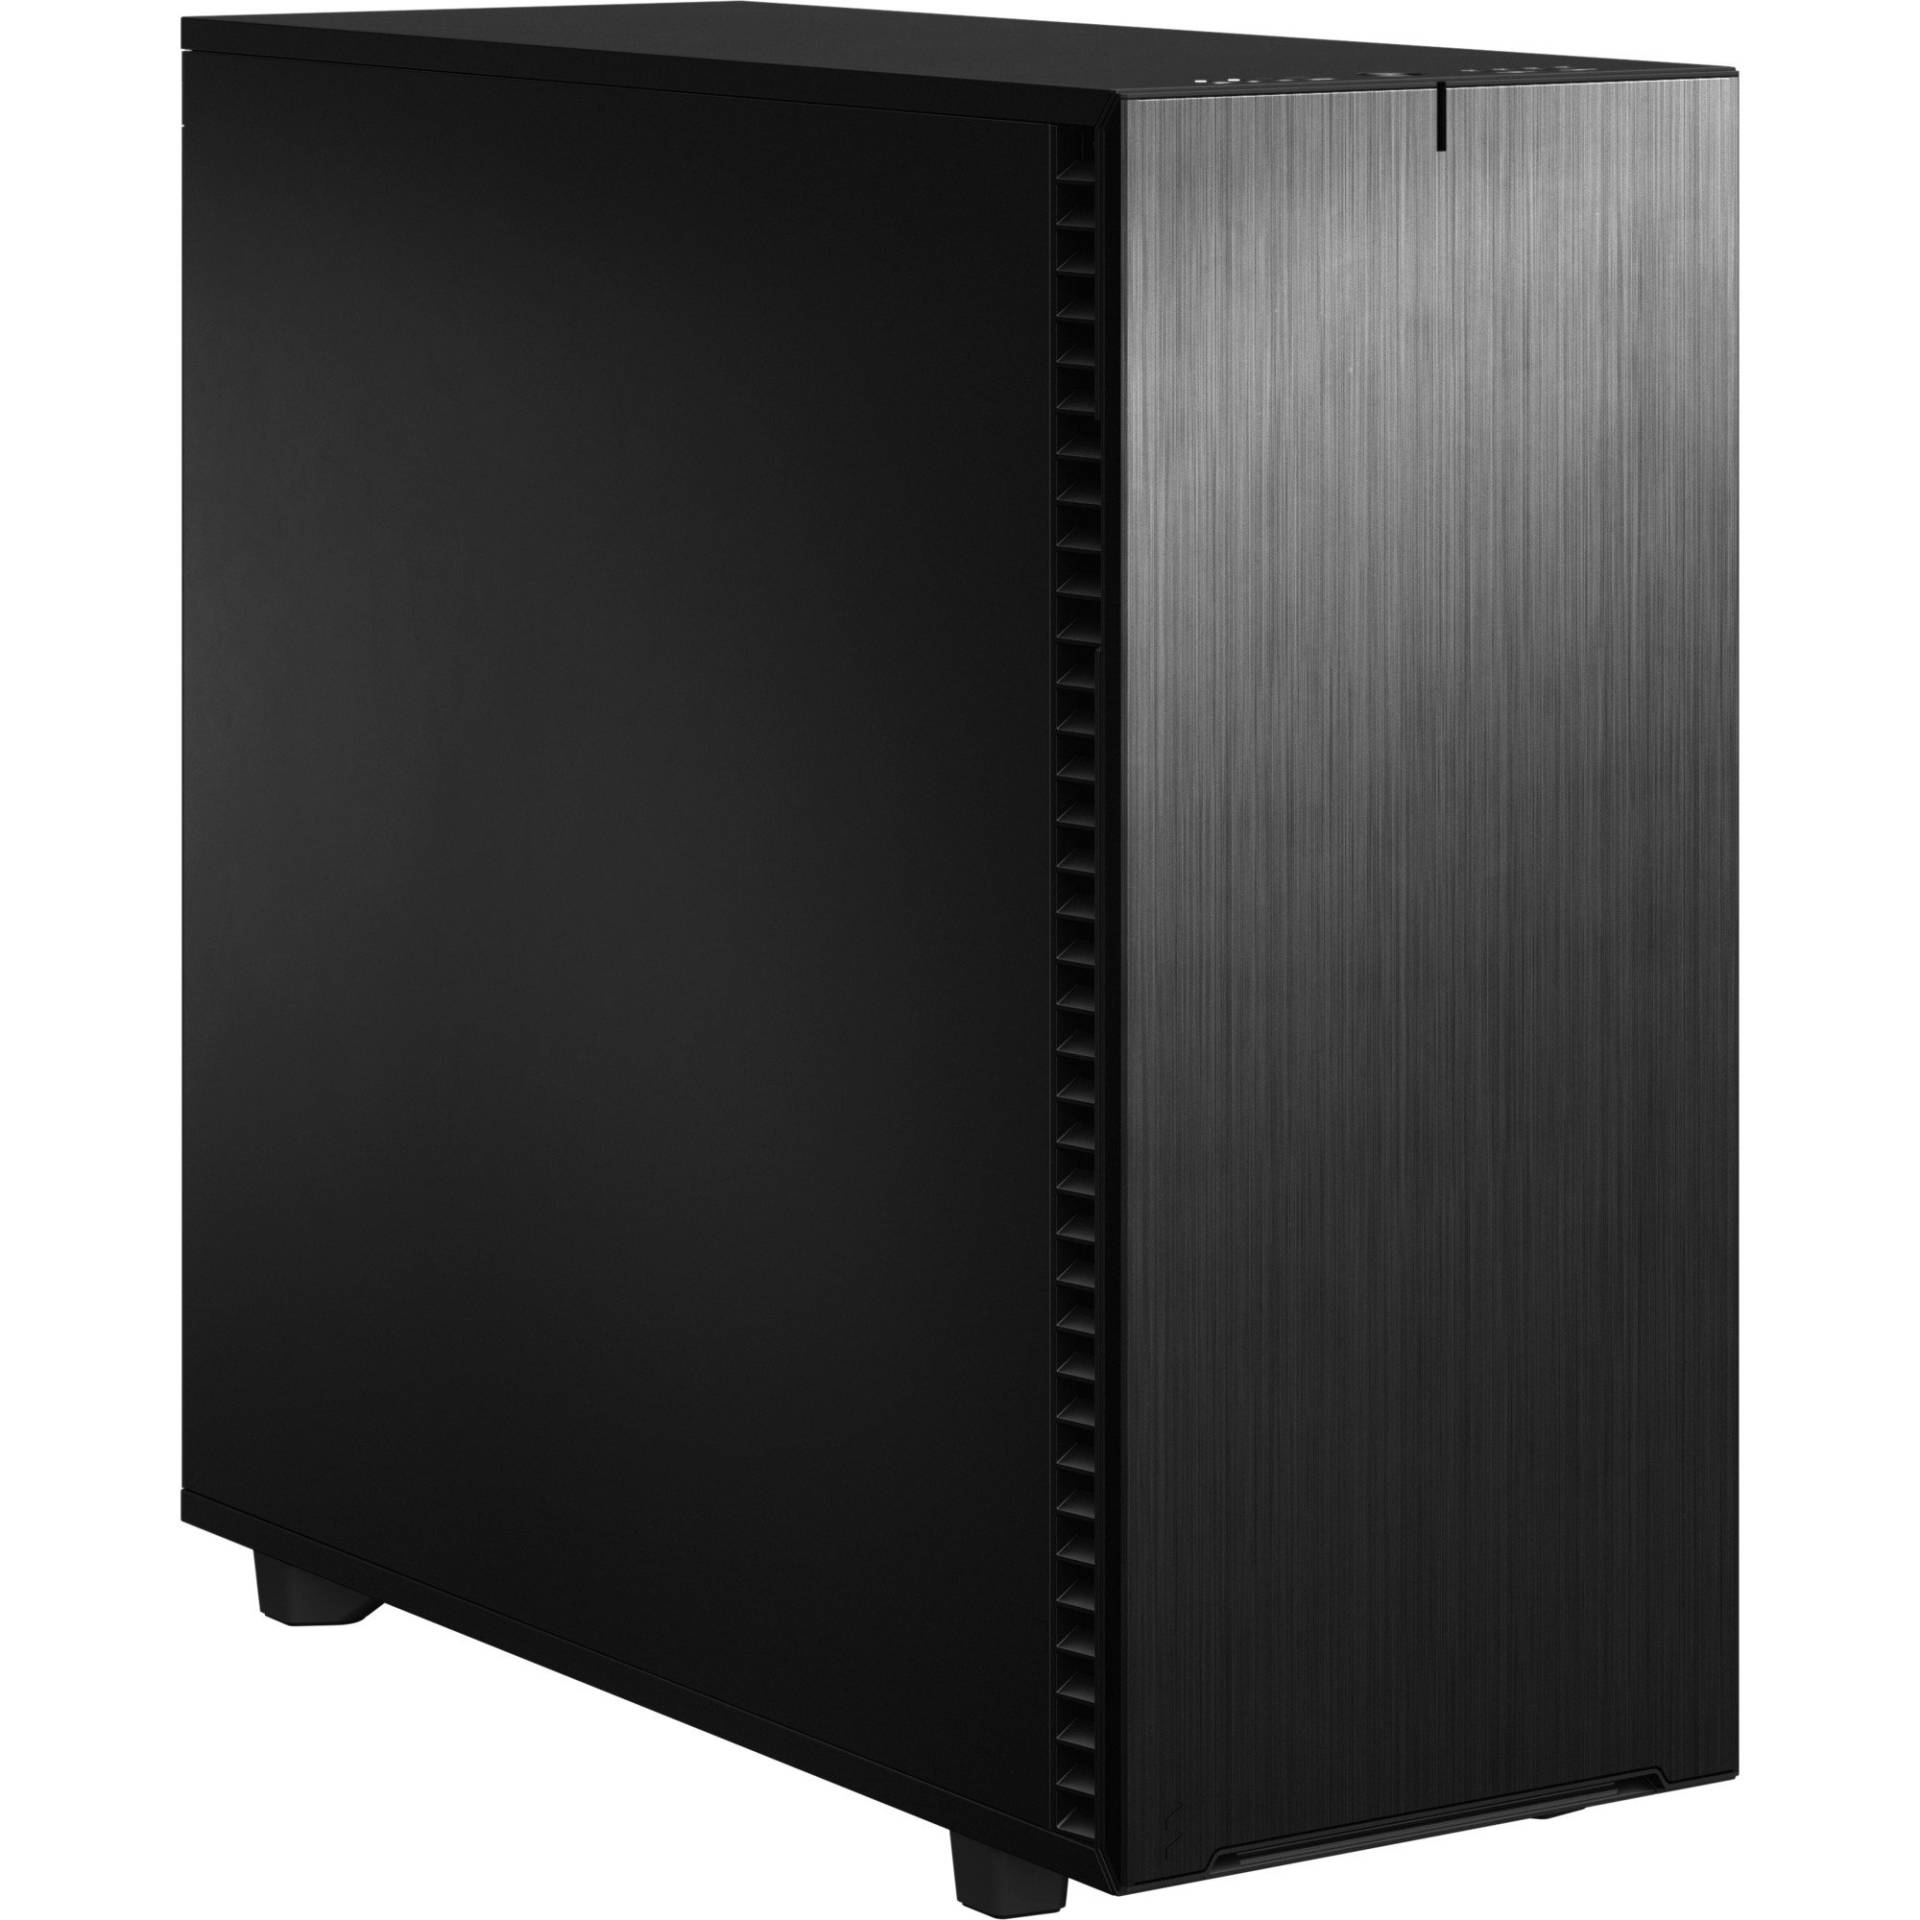 Define 7 XL Black Solid, Big-Tower-Gehäuse von Fractal Design